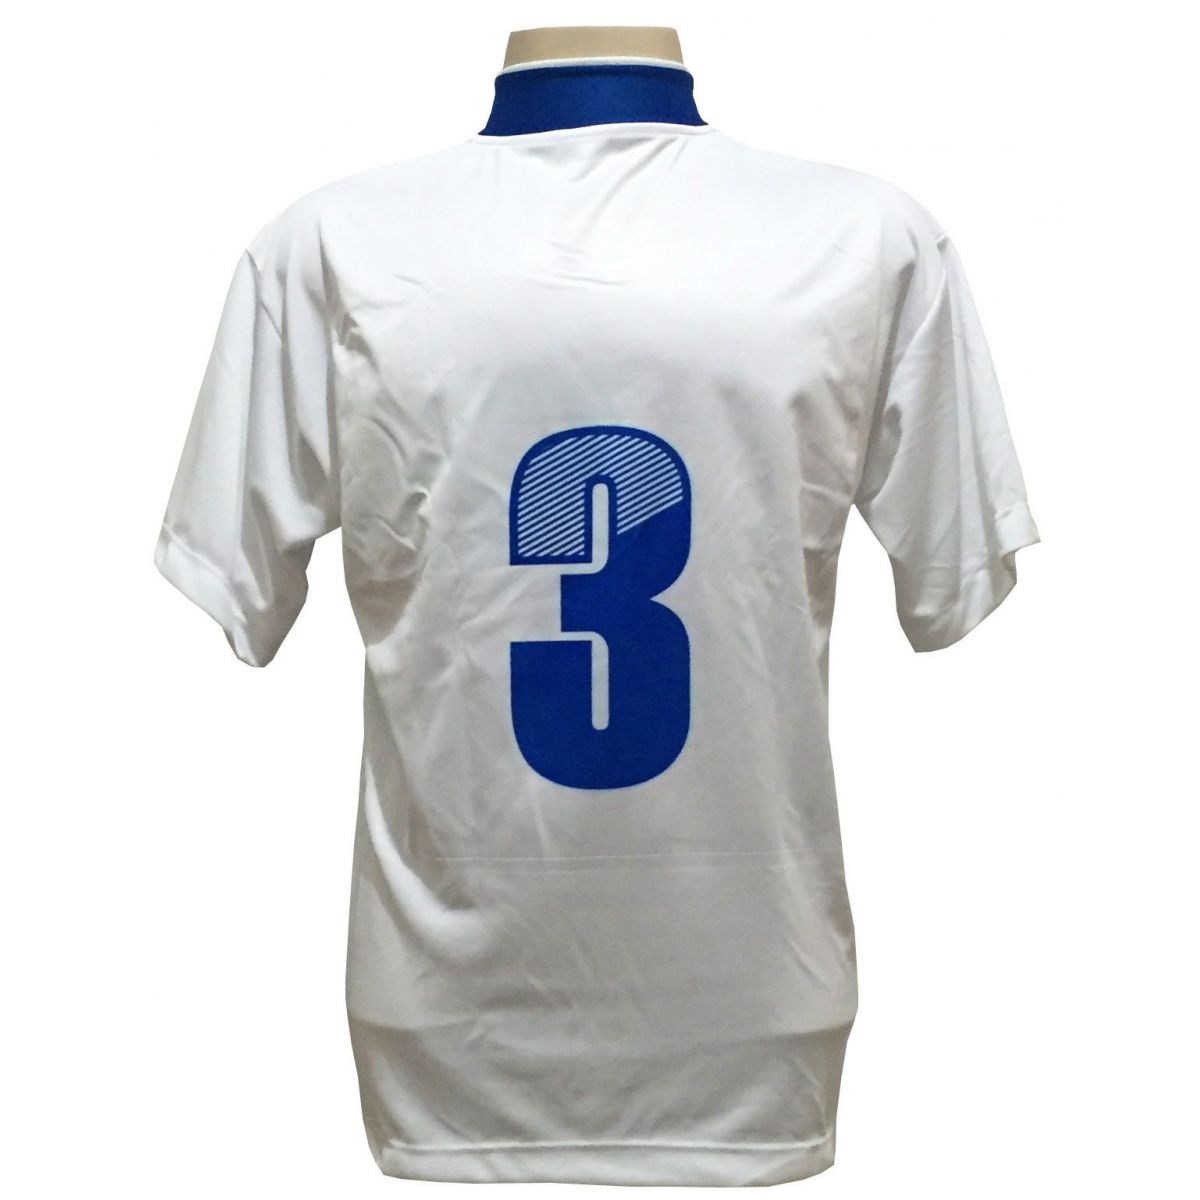 Uniforme Esportivo Completo modelo Suécia 14+1 (14 camisas Branco/Royal + 14 calções Madrid Royal + 14 pares de meiões Royal + 1 conjunto de goleiro) + Brindes